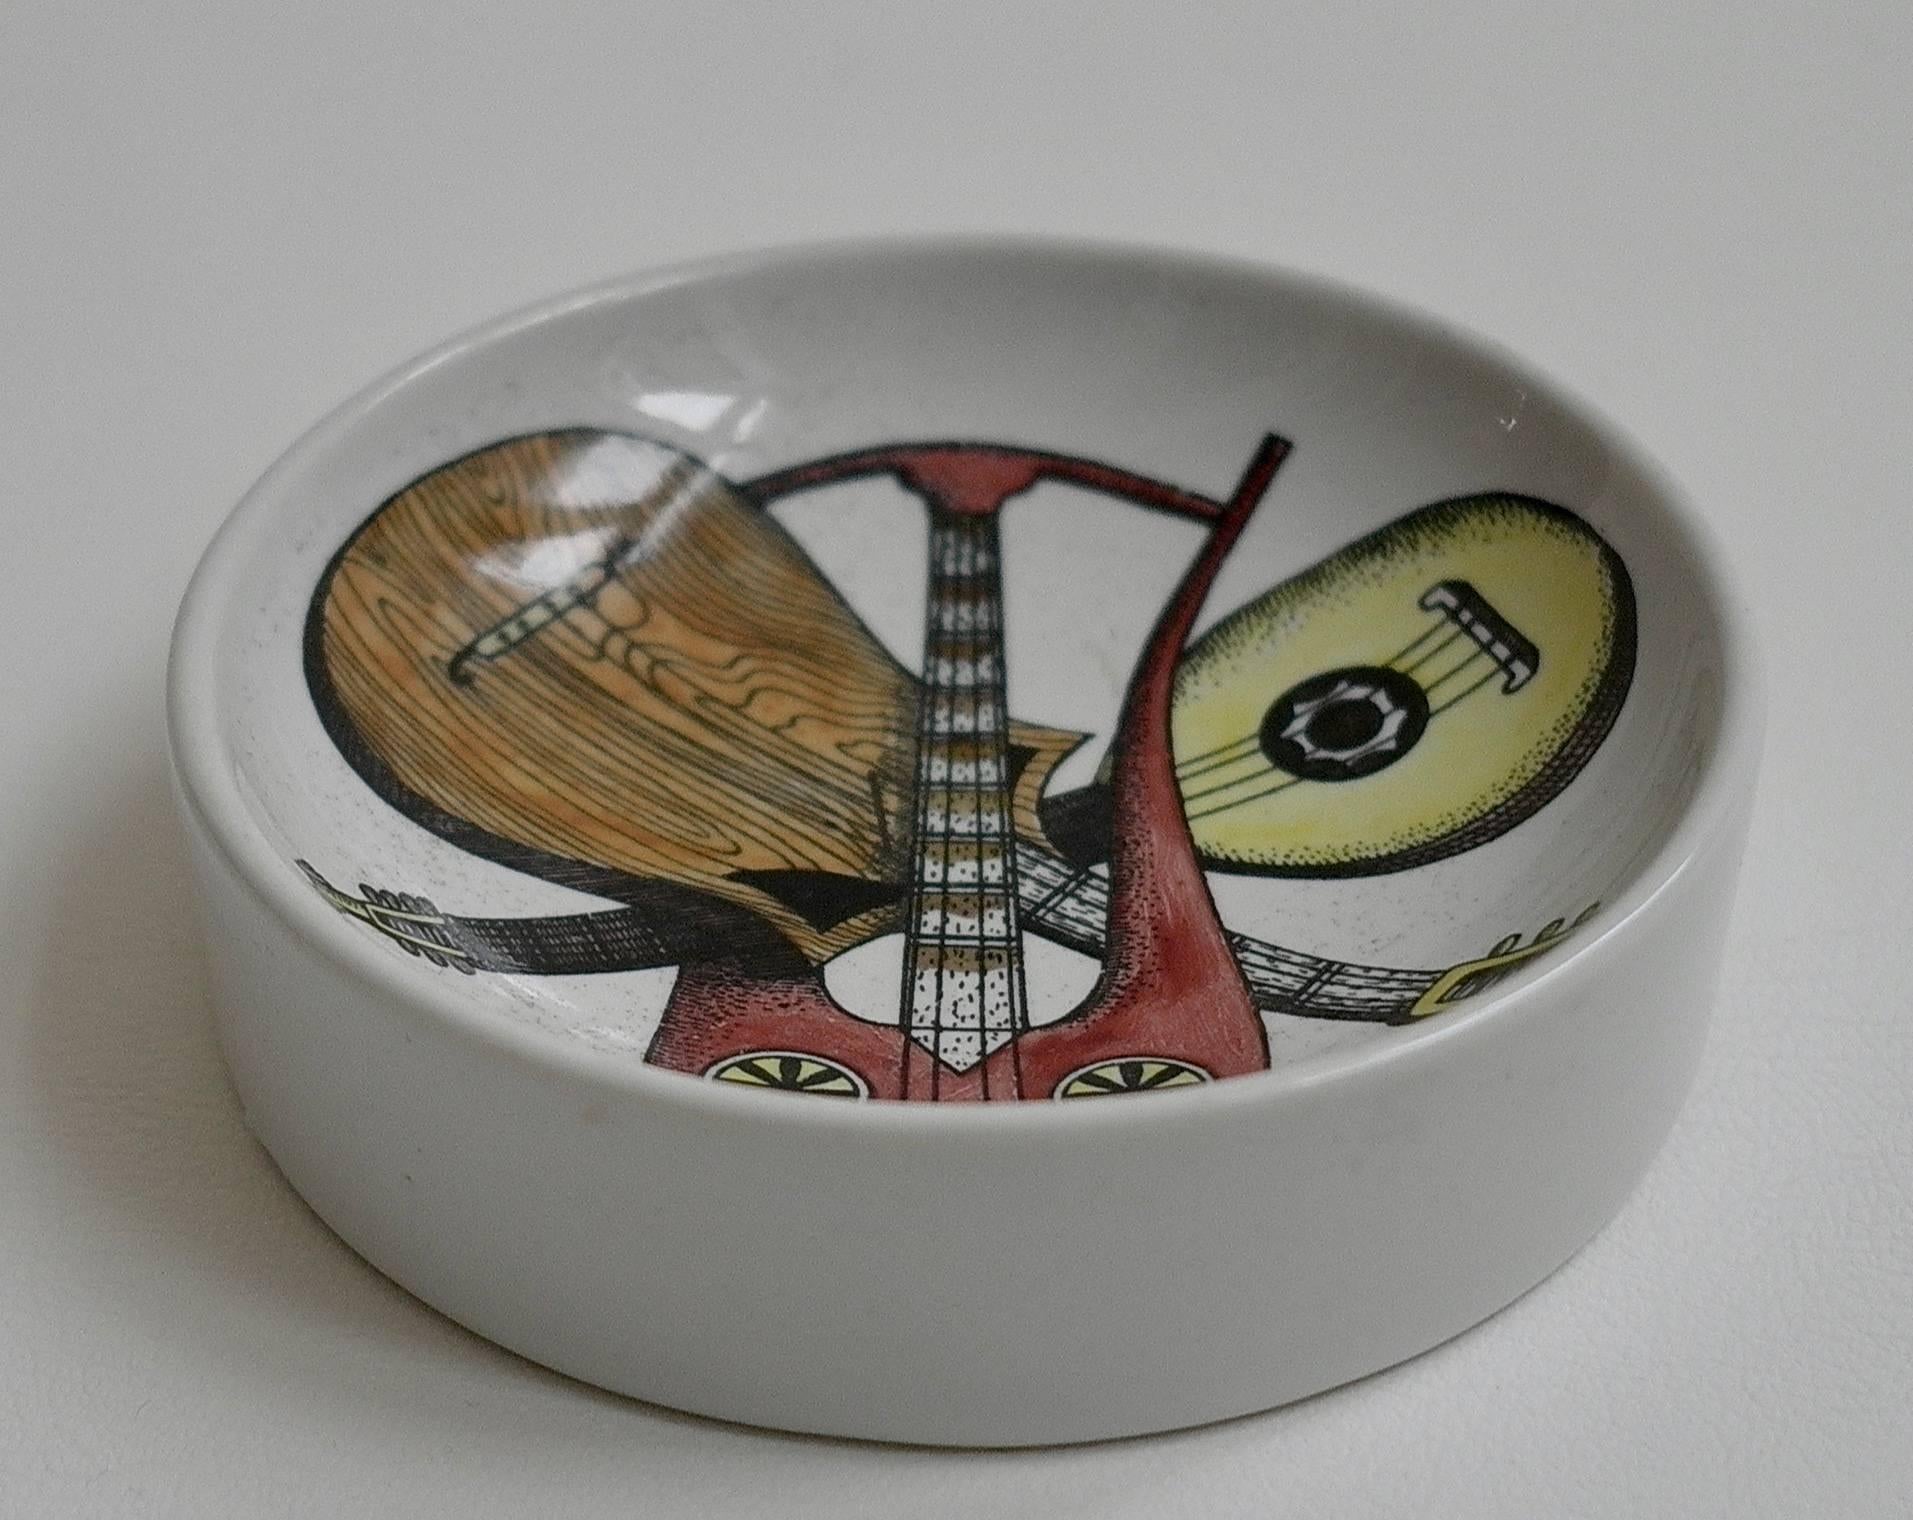 A ceramic dish by Piero Fornasetti 'Strumenti Musicali' in excellent condition.